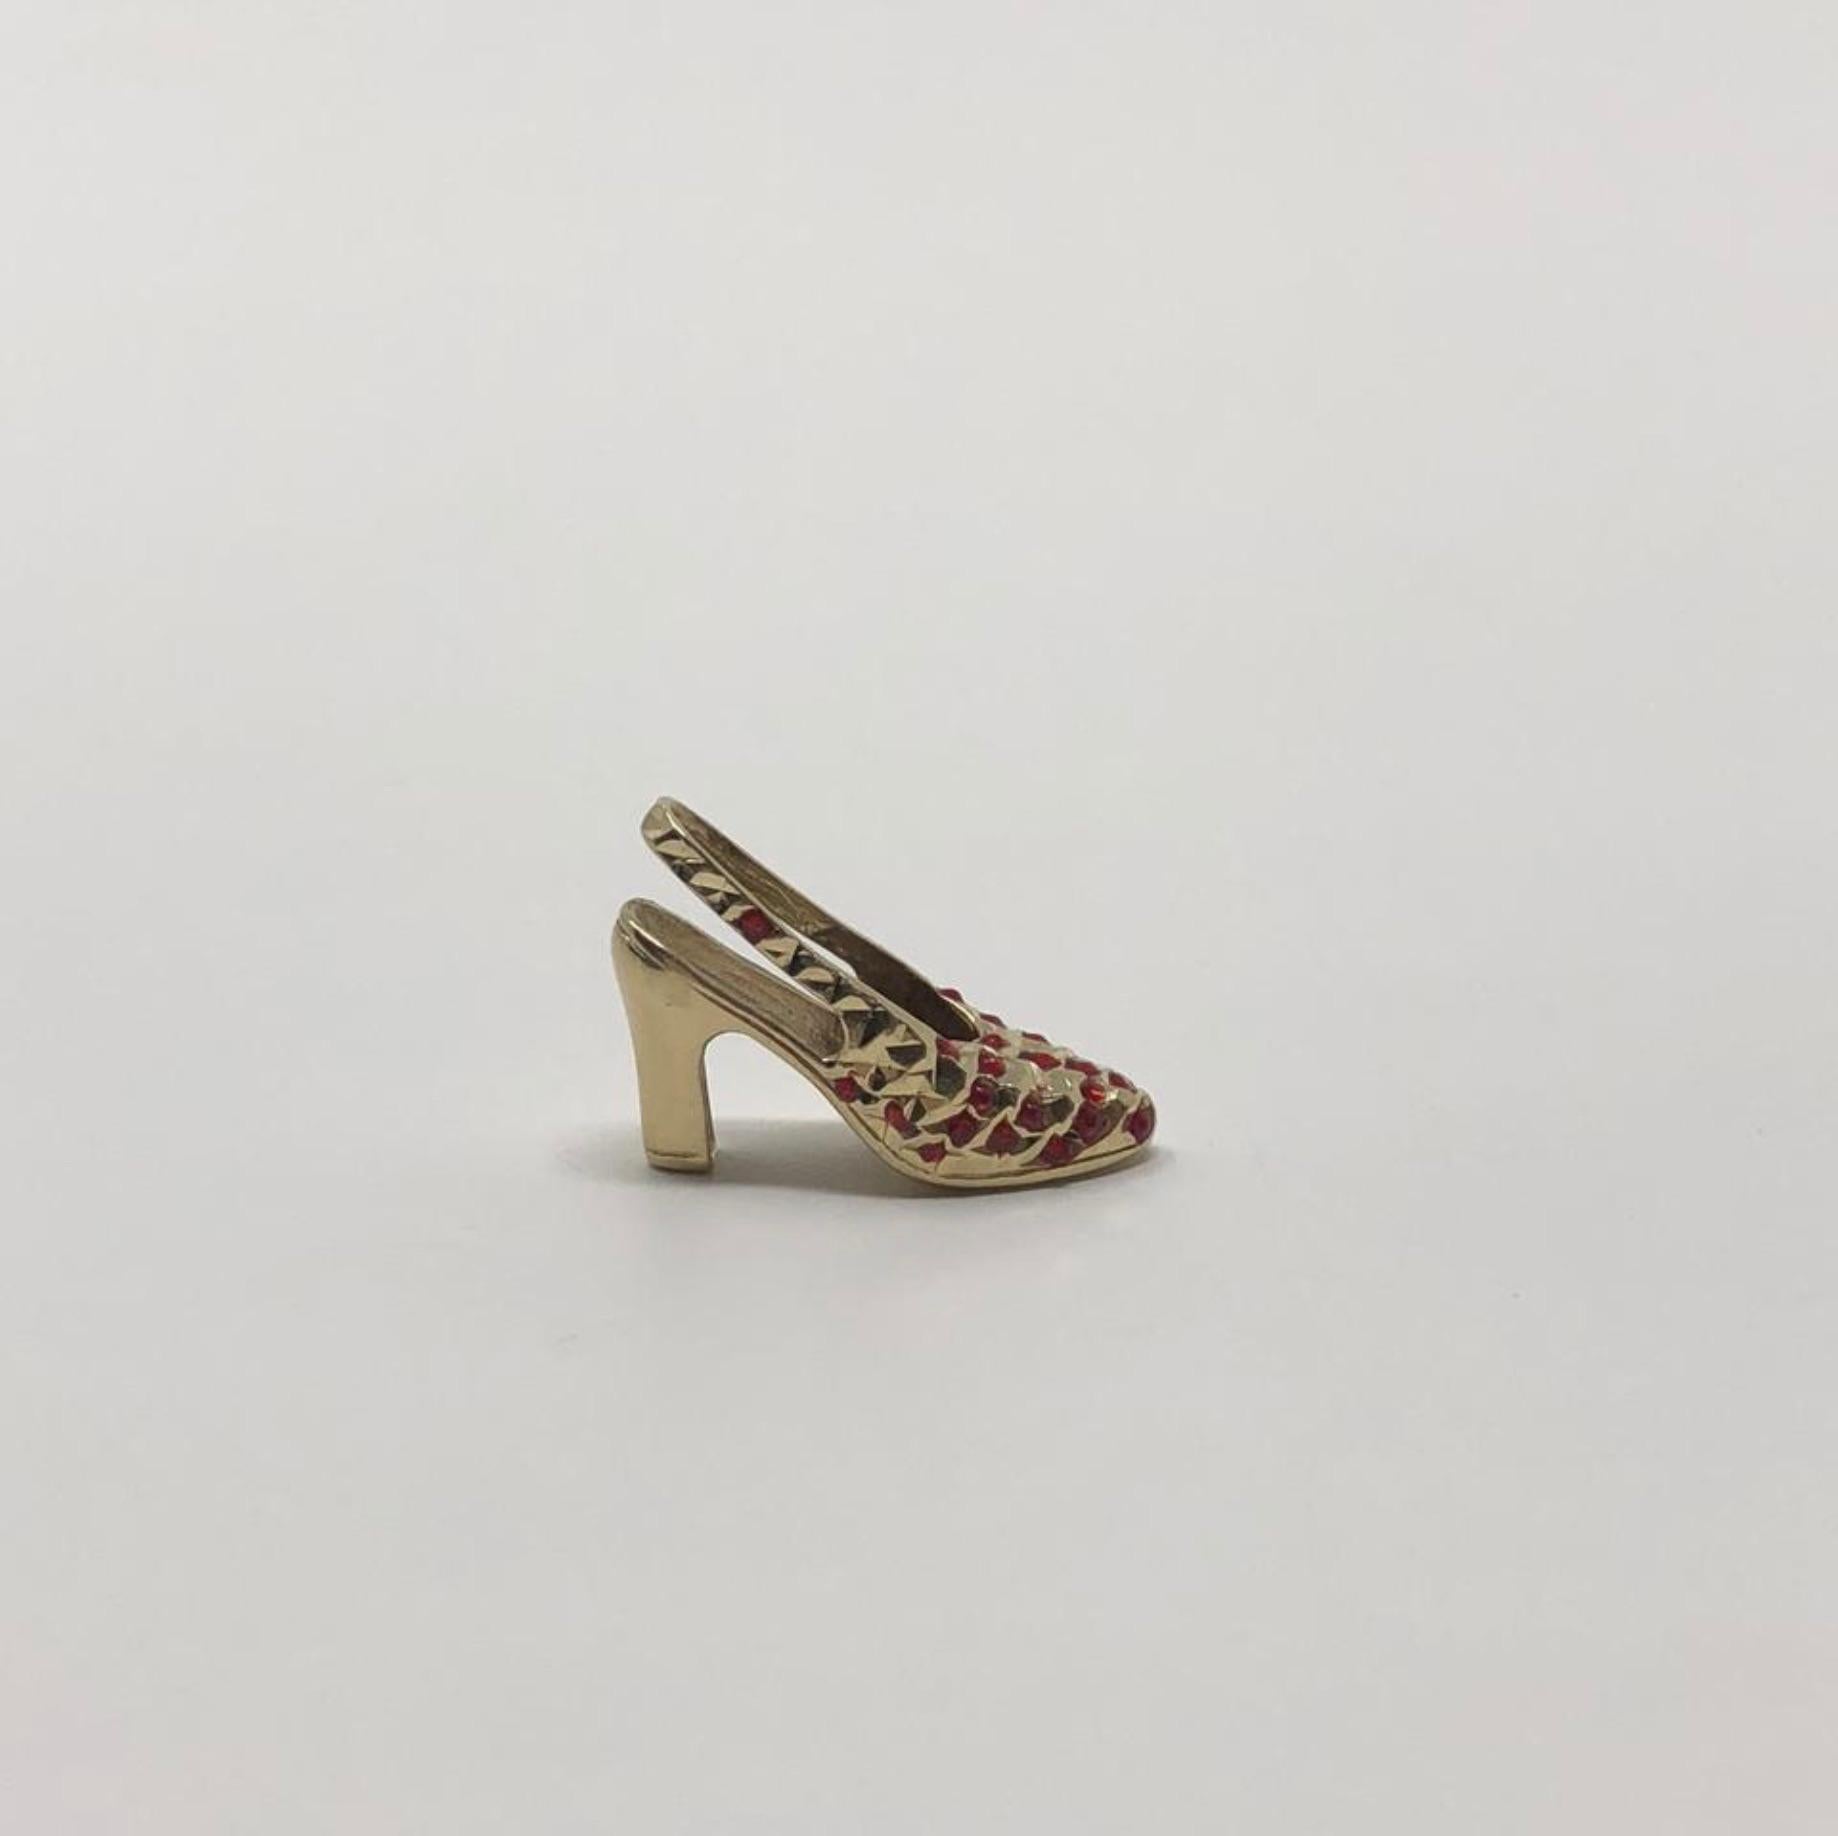 Women's or Men's Vintage 14 Karat Gold Red Garnet High Heel Sling Back Pump Pendant Charm